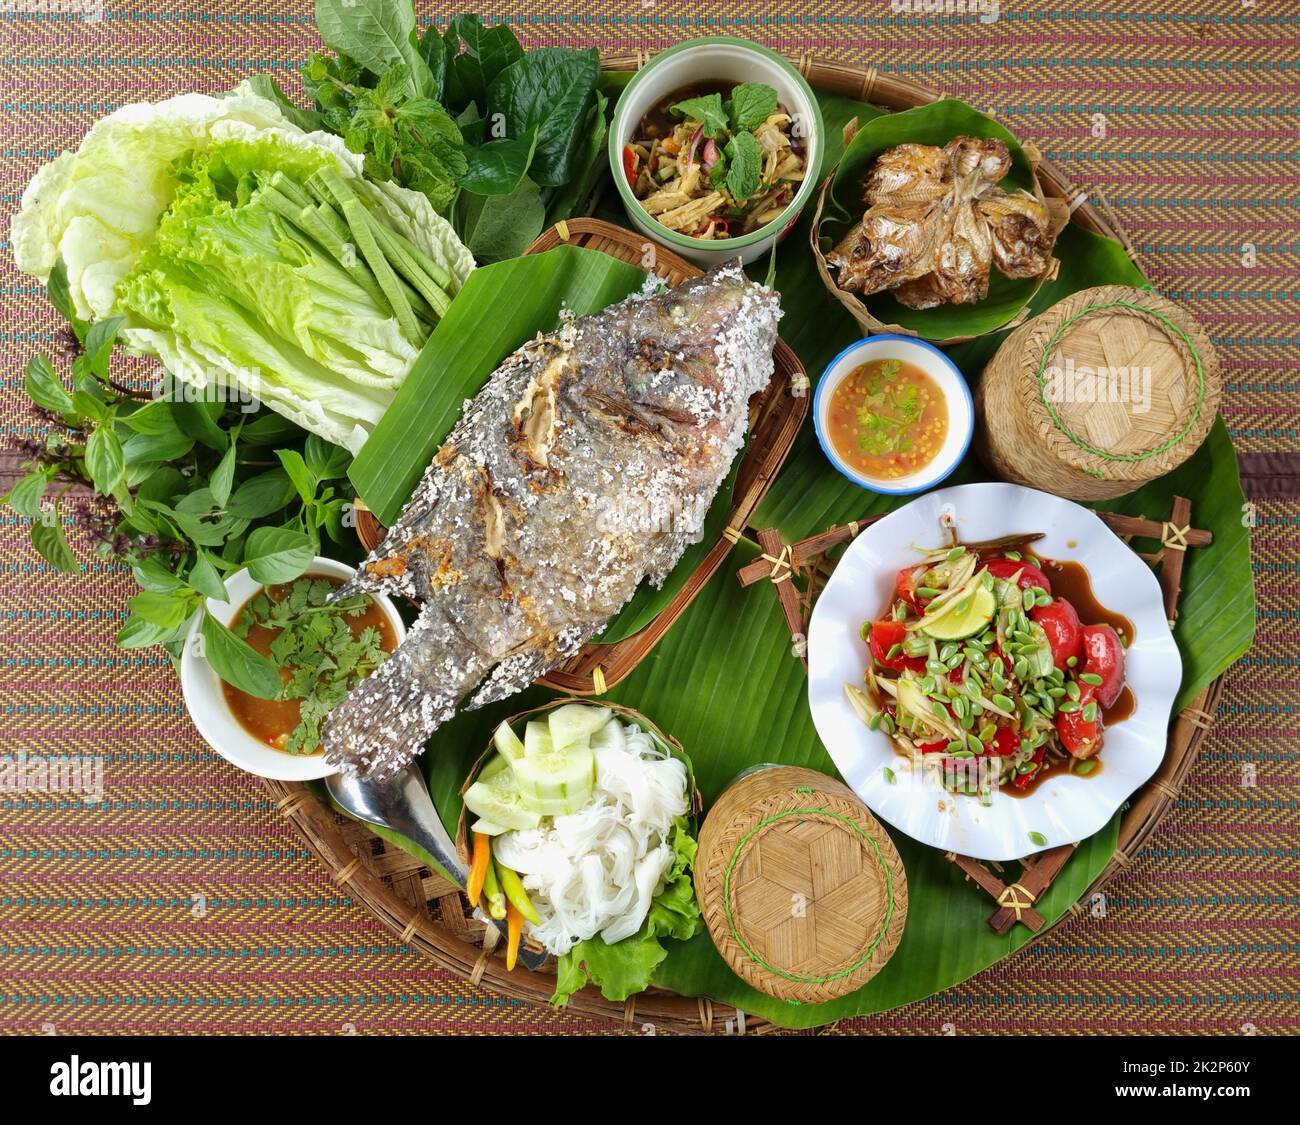 ISAN comida es deliciosa, Tailandia comida, vista superior, tono de color cálido Foto de stock